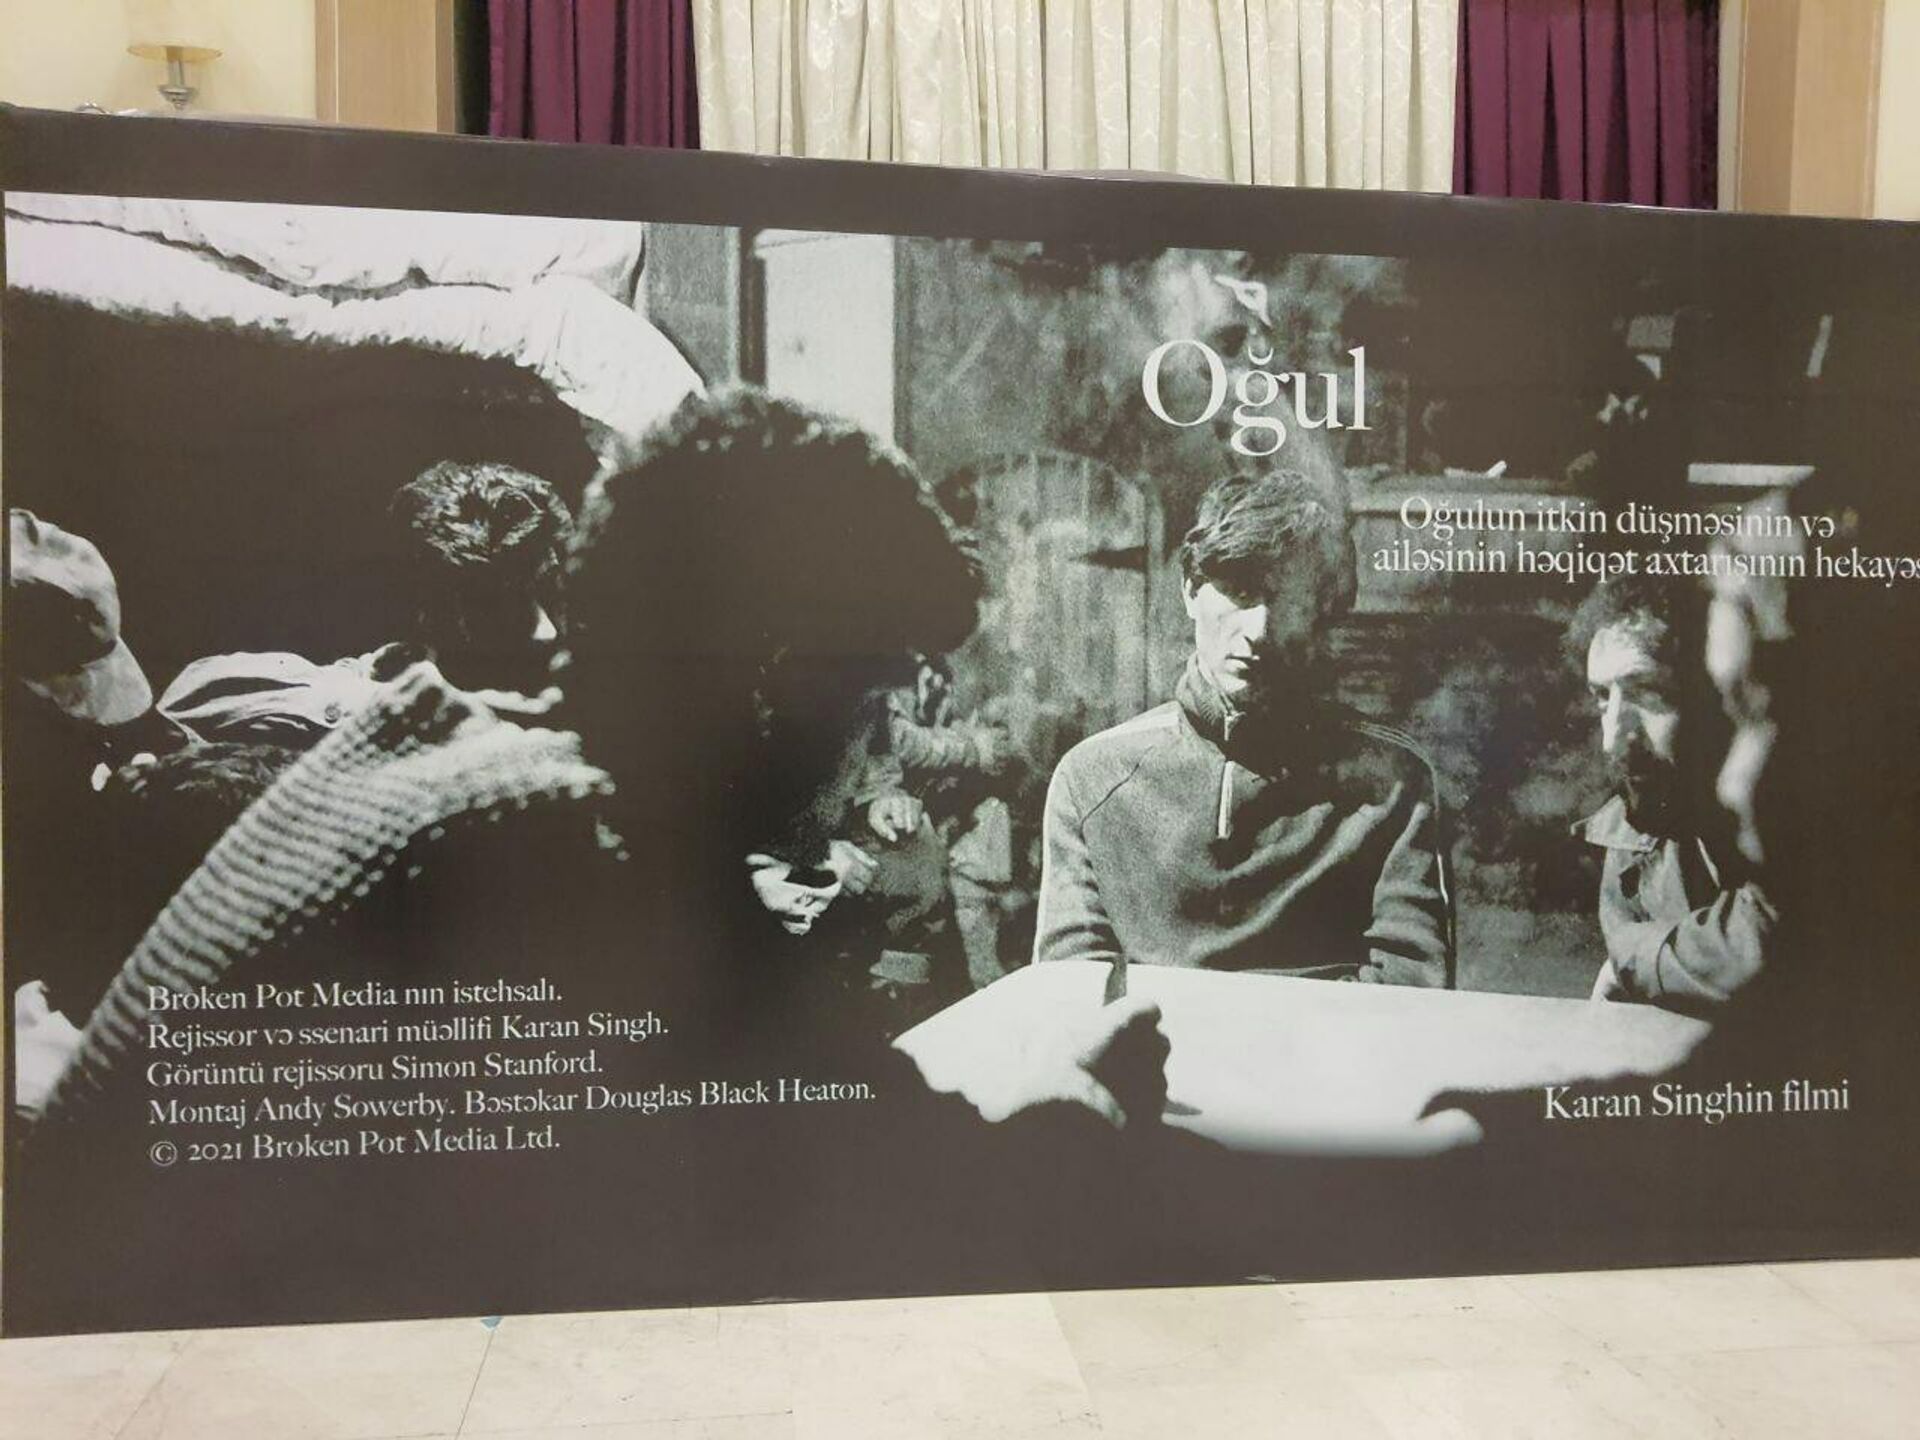 Презентация документально-исследовательского фильма Oğul (Сын) в киноцентре Низами - Sputnik Азербайджан, 1920, 28.02.2022